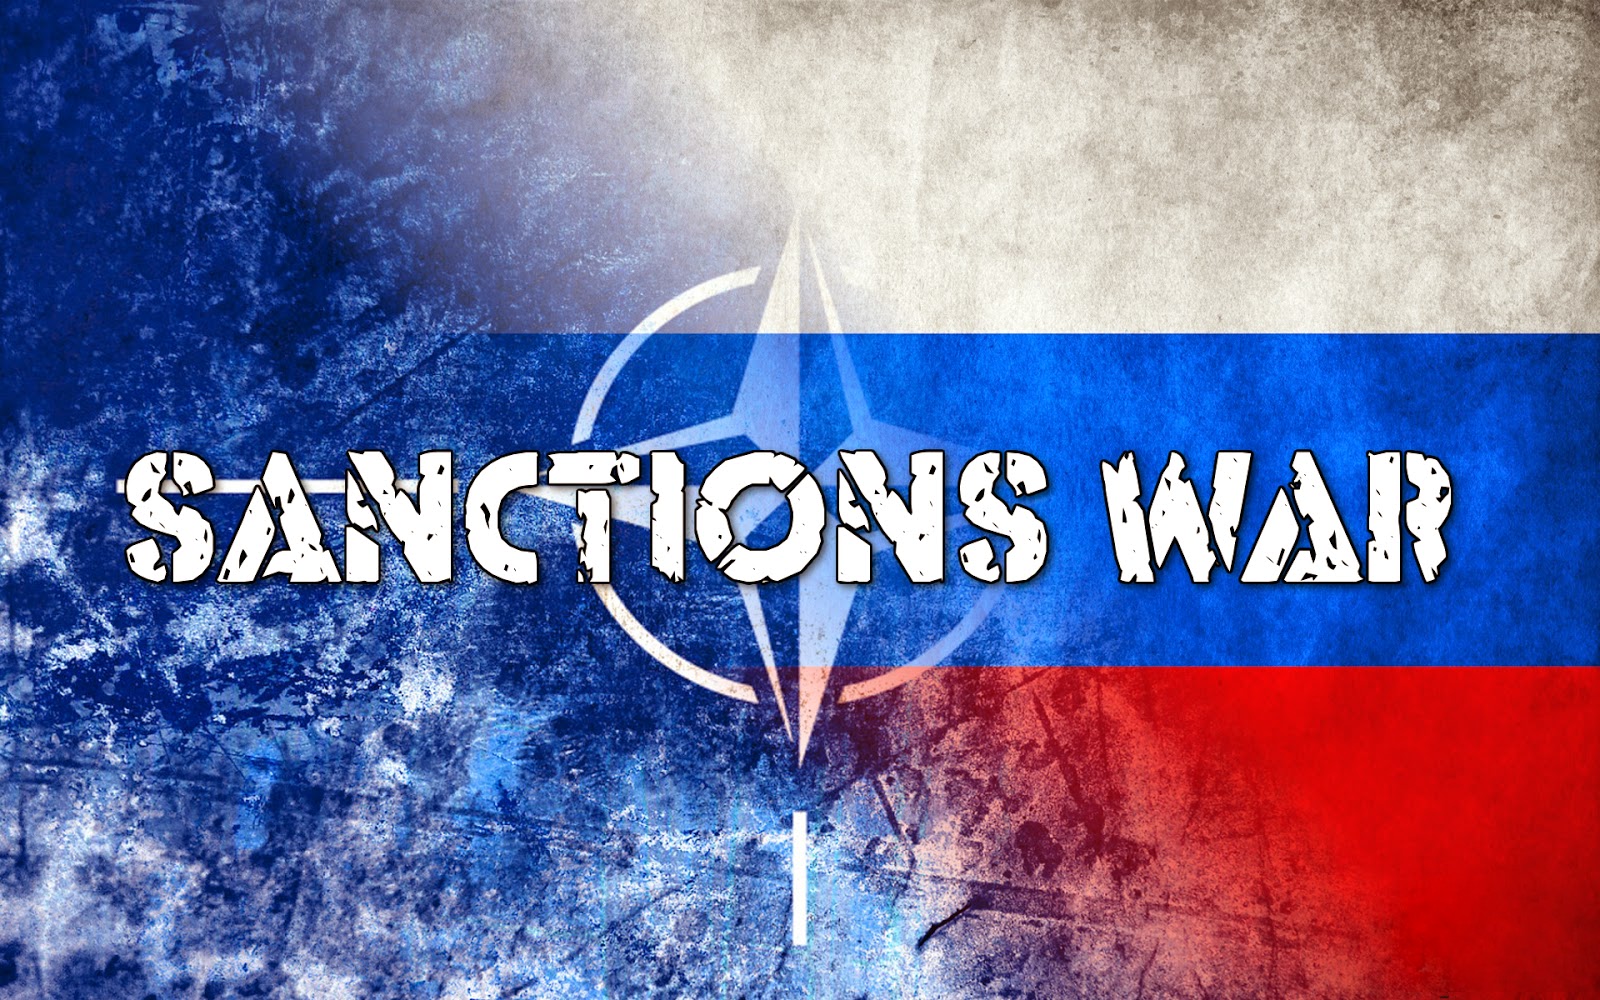 Ukraine crisis: EU links Russia sanctions to truce deal